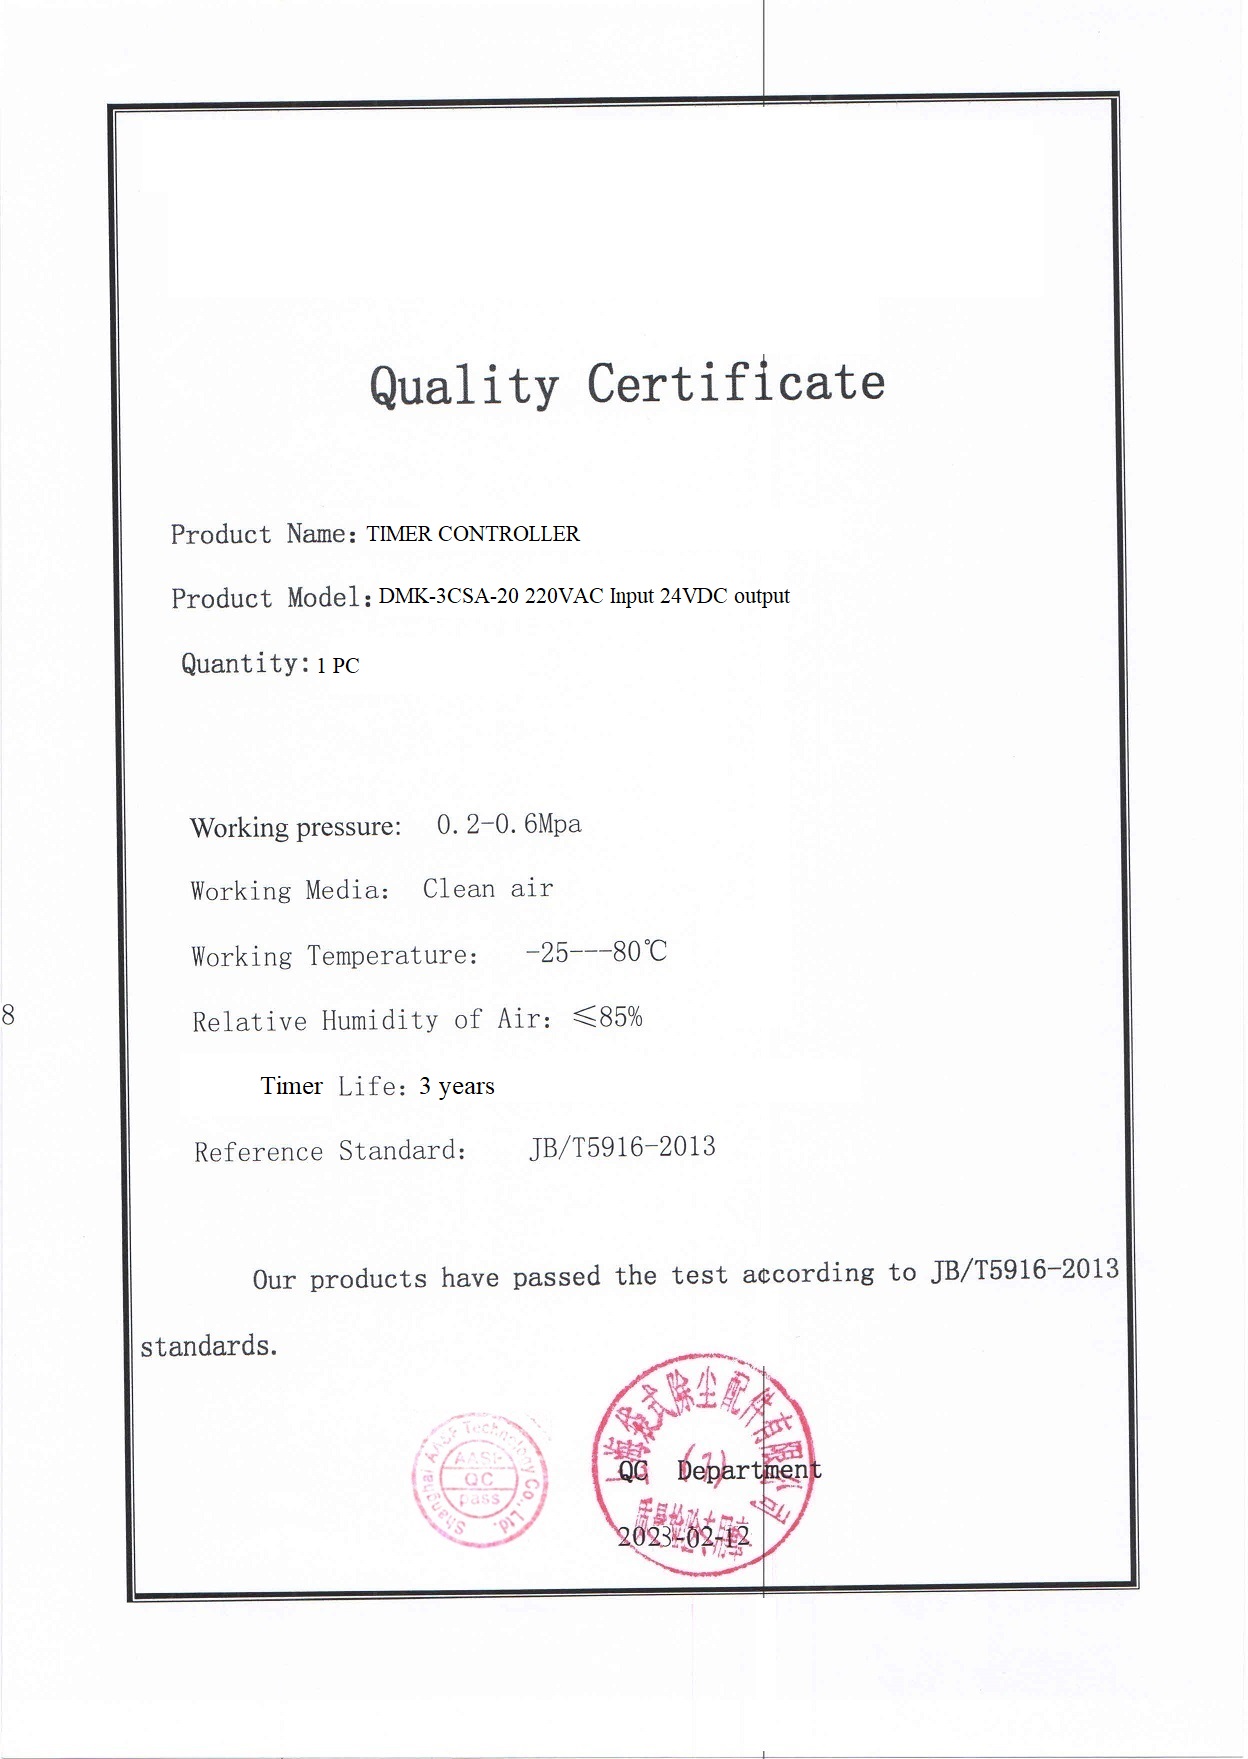 certificado de calidad de prueba 2023